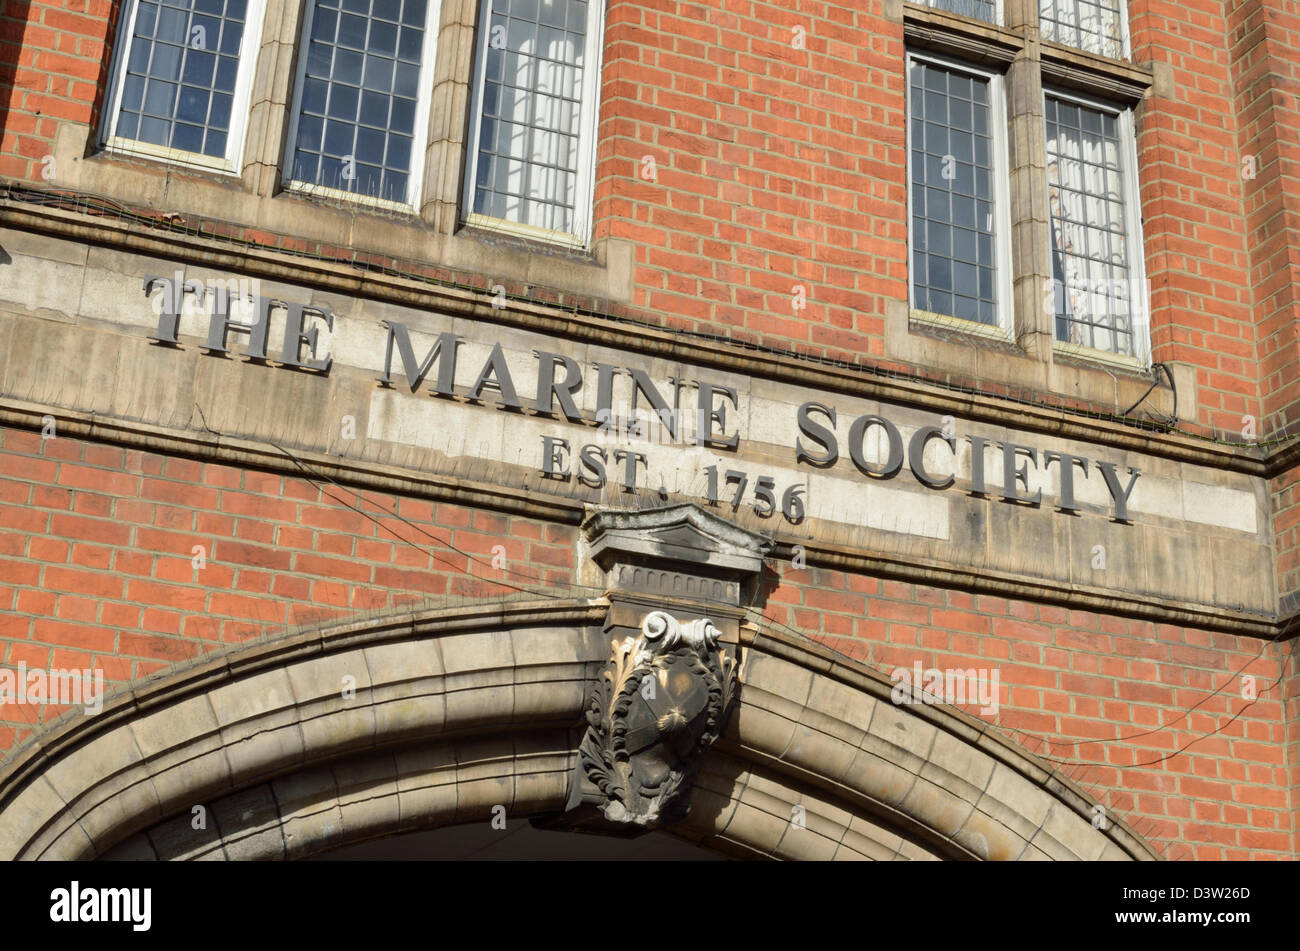 Marine Society and Sea Cadets HQ, Lambeth Road, London, UK Stock Photo